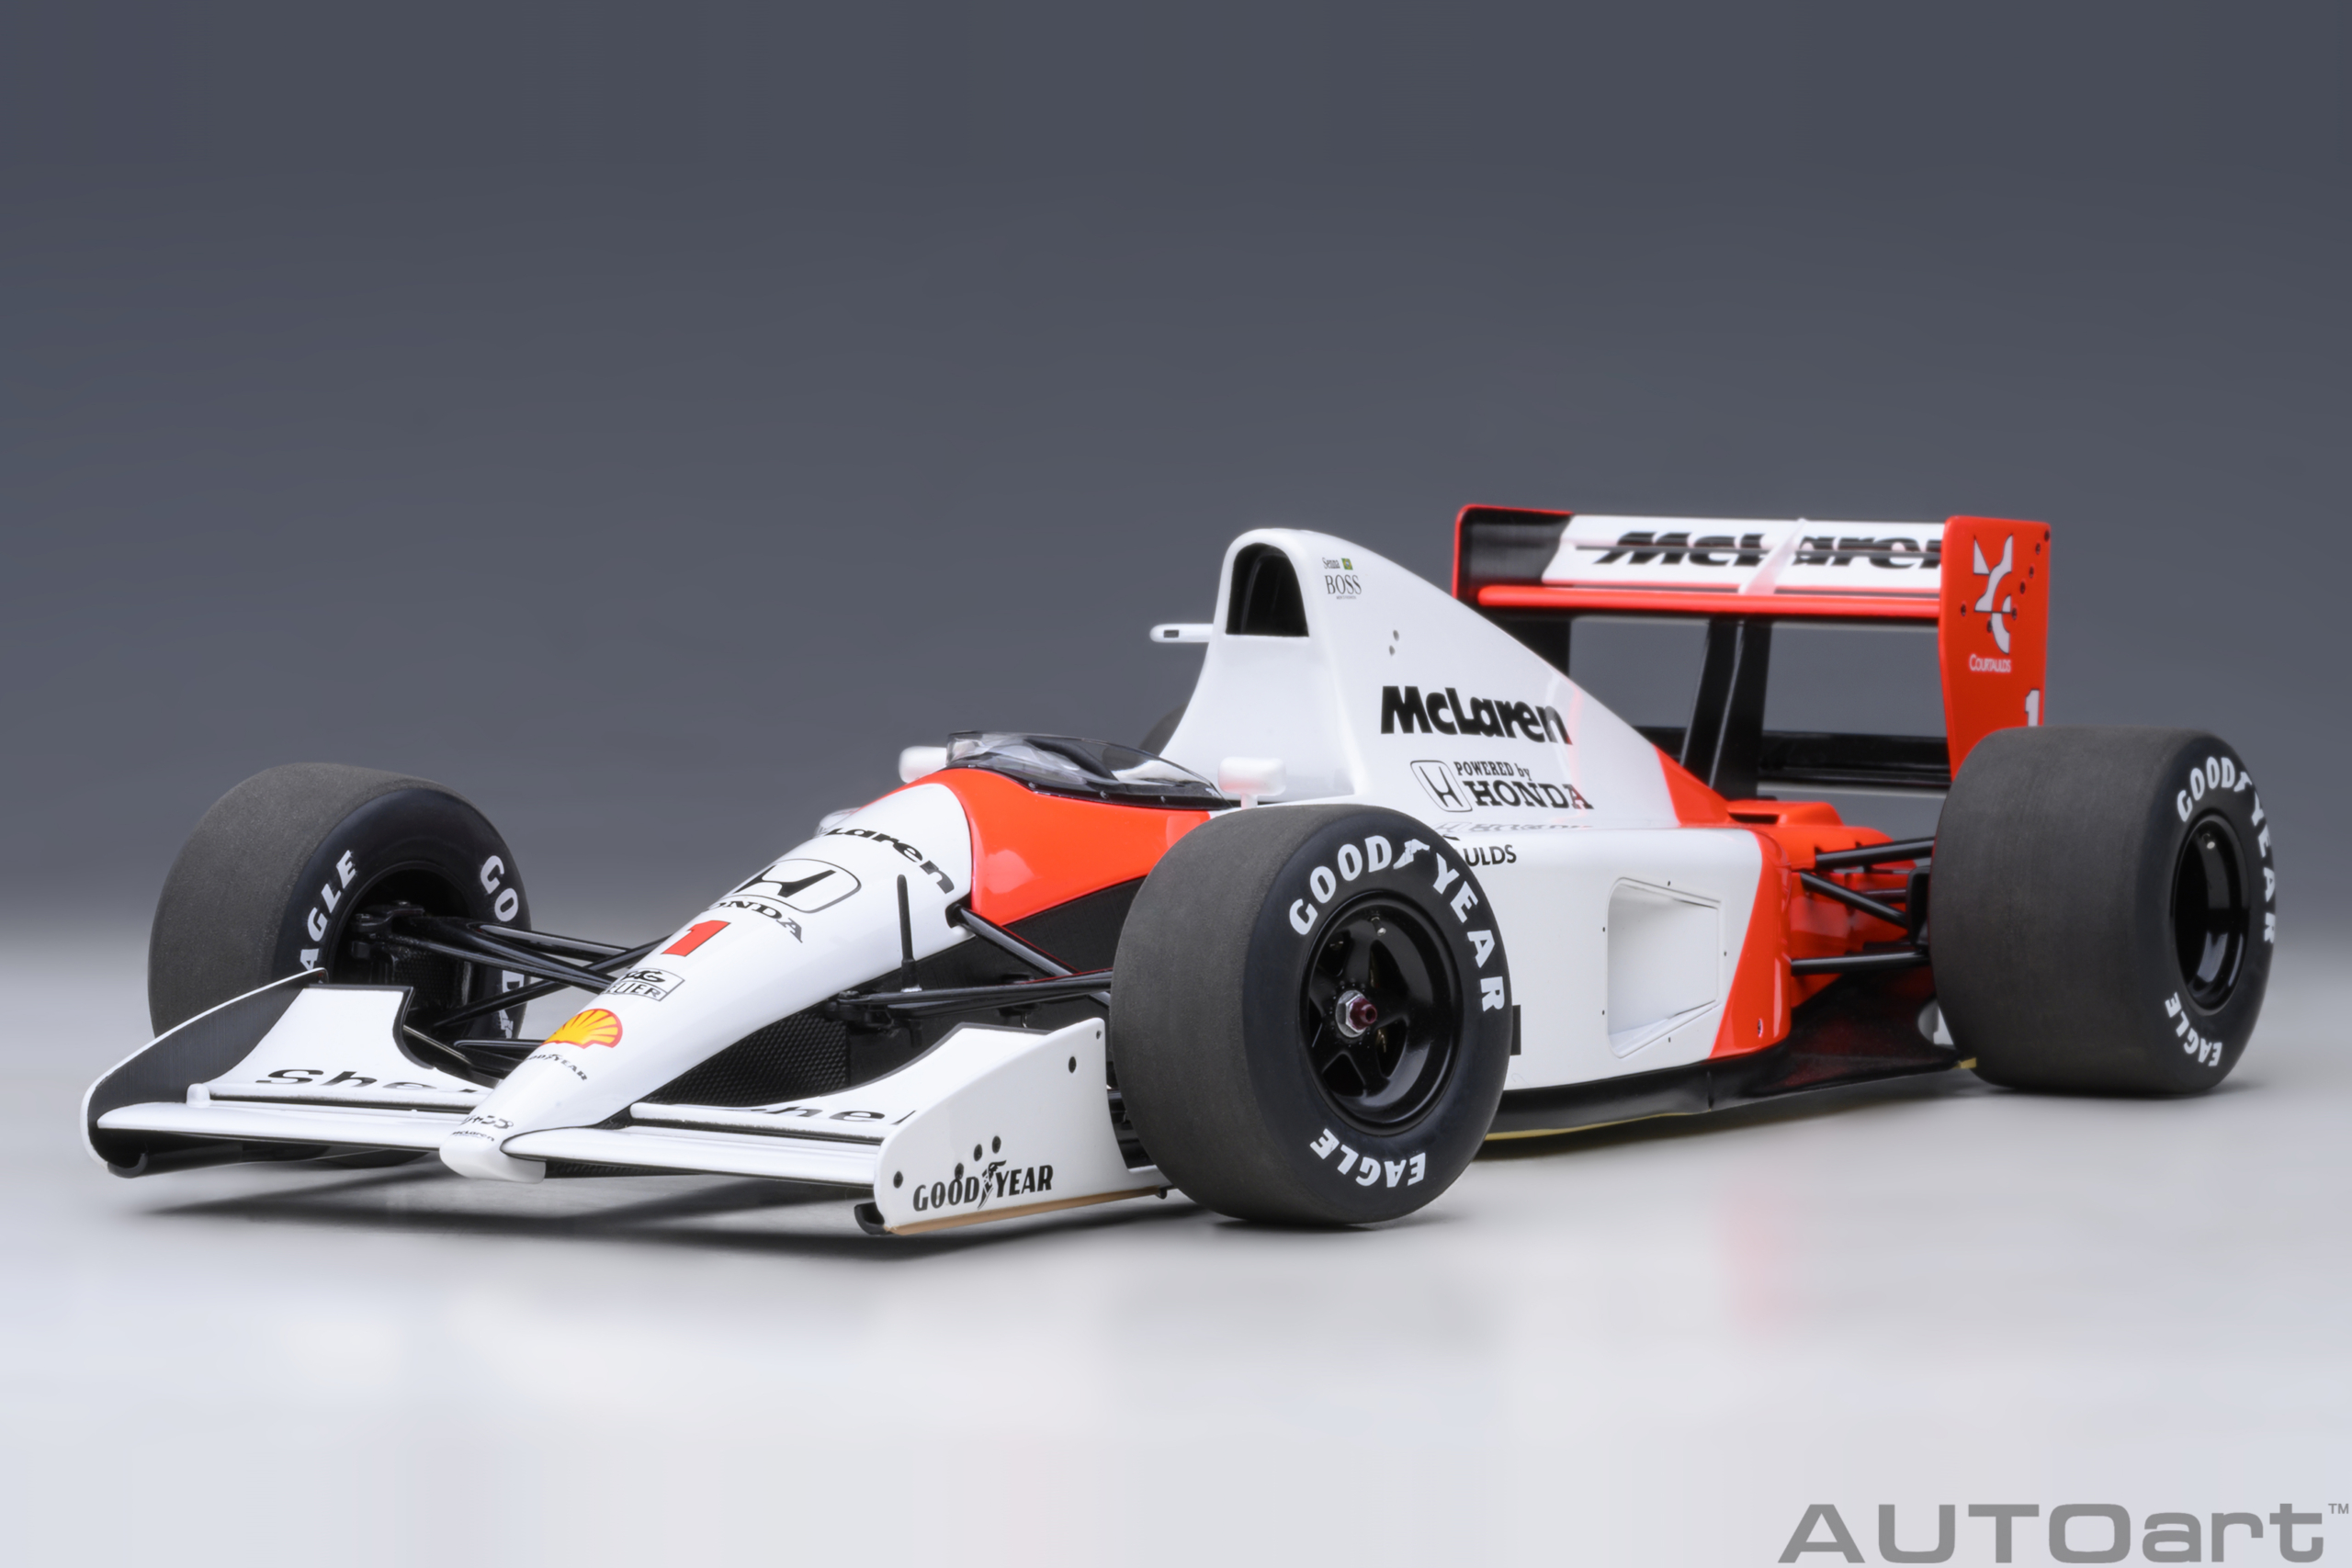 autoart-89140-2-McLaren-Honda-MP-4-6-Japanese-GP-1991-Ayrton-Senna-da-Silva-No-1-Sempre